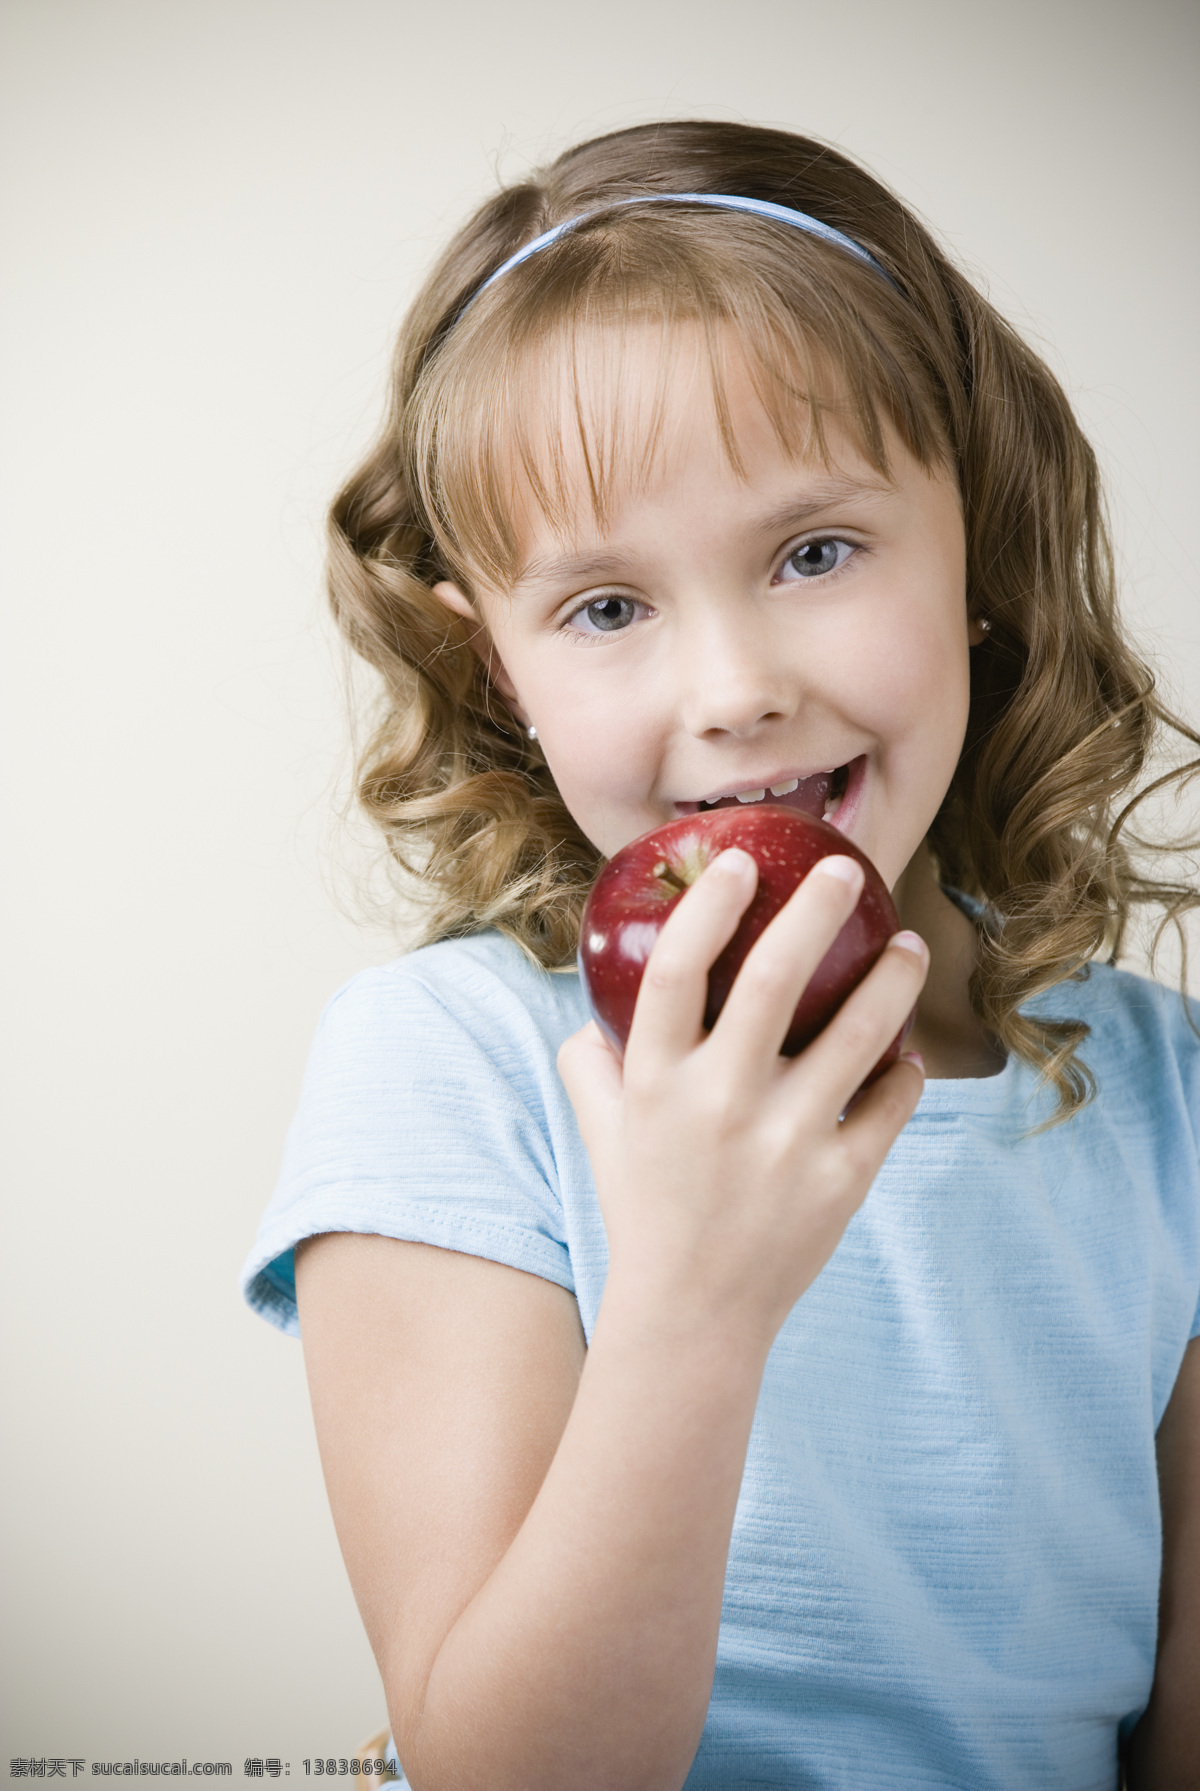 吃 苹果 小女孩 吃苹果 天真无邪 童真 吃水果 外国小朋友 外国小孩 儿童图片 人物图片